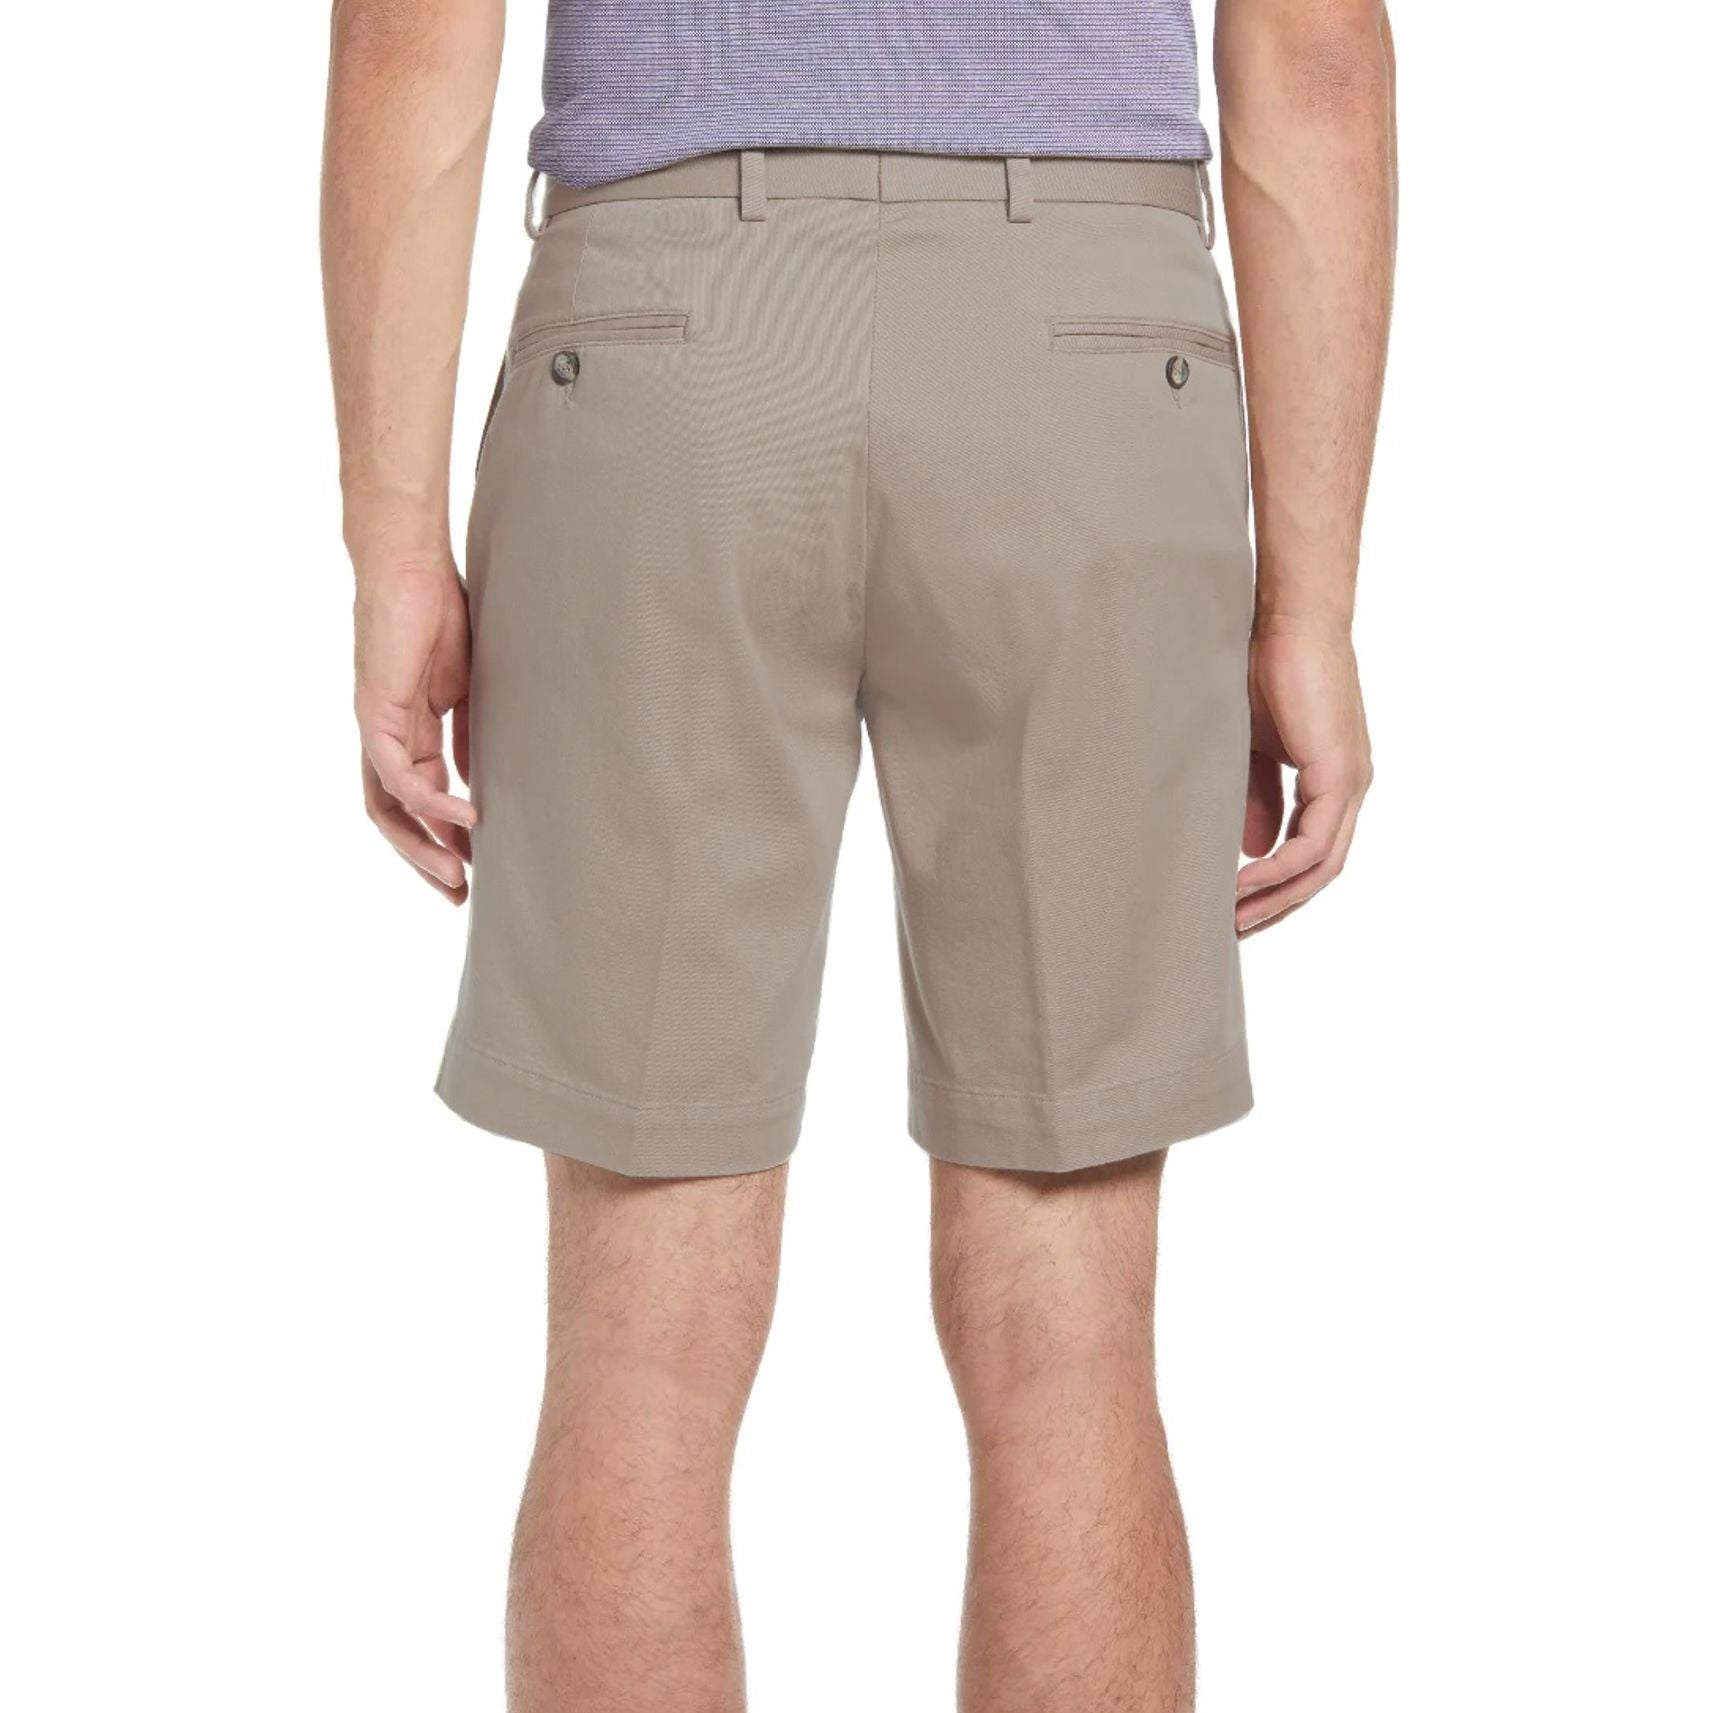 Washed Khaki Shorts in Khaki (Sumpter9 Flat Front) by Charleston Khakis